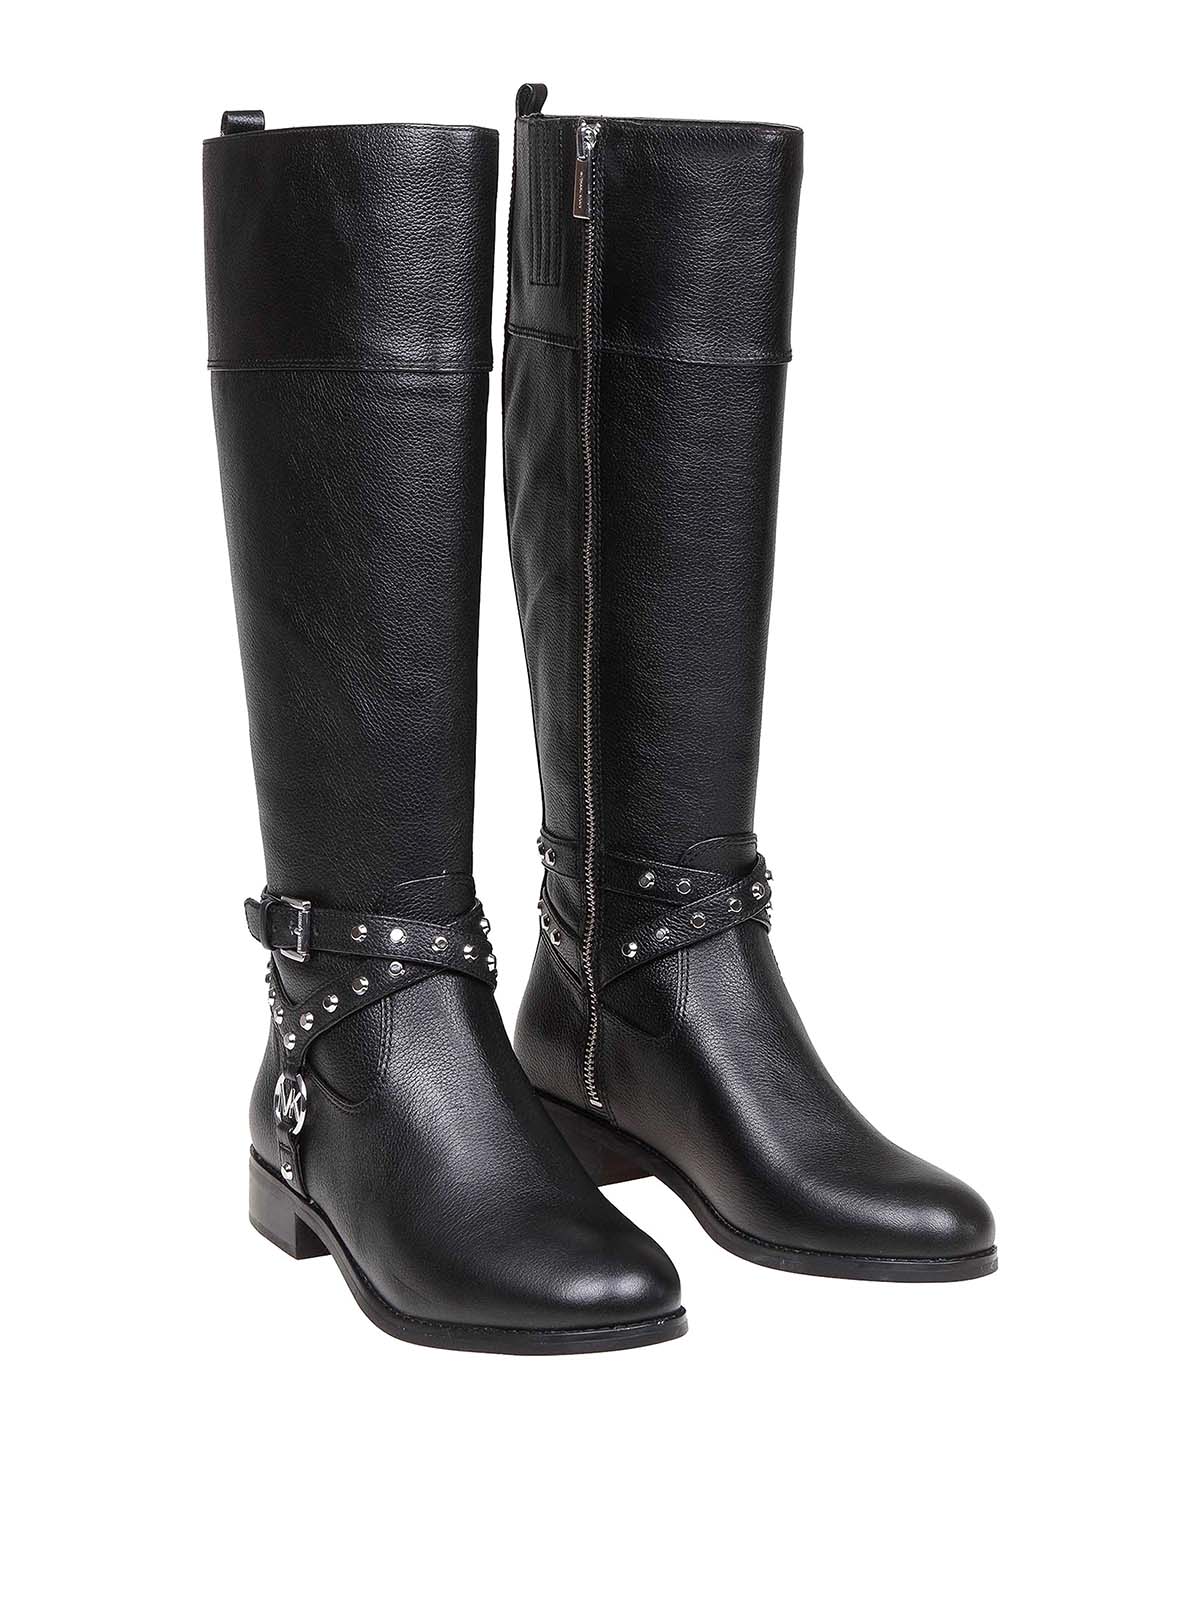 Boots Michael Kors  Preston leather boots  40F9PRFB6L001